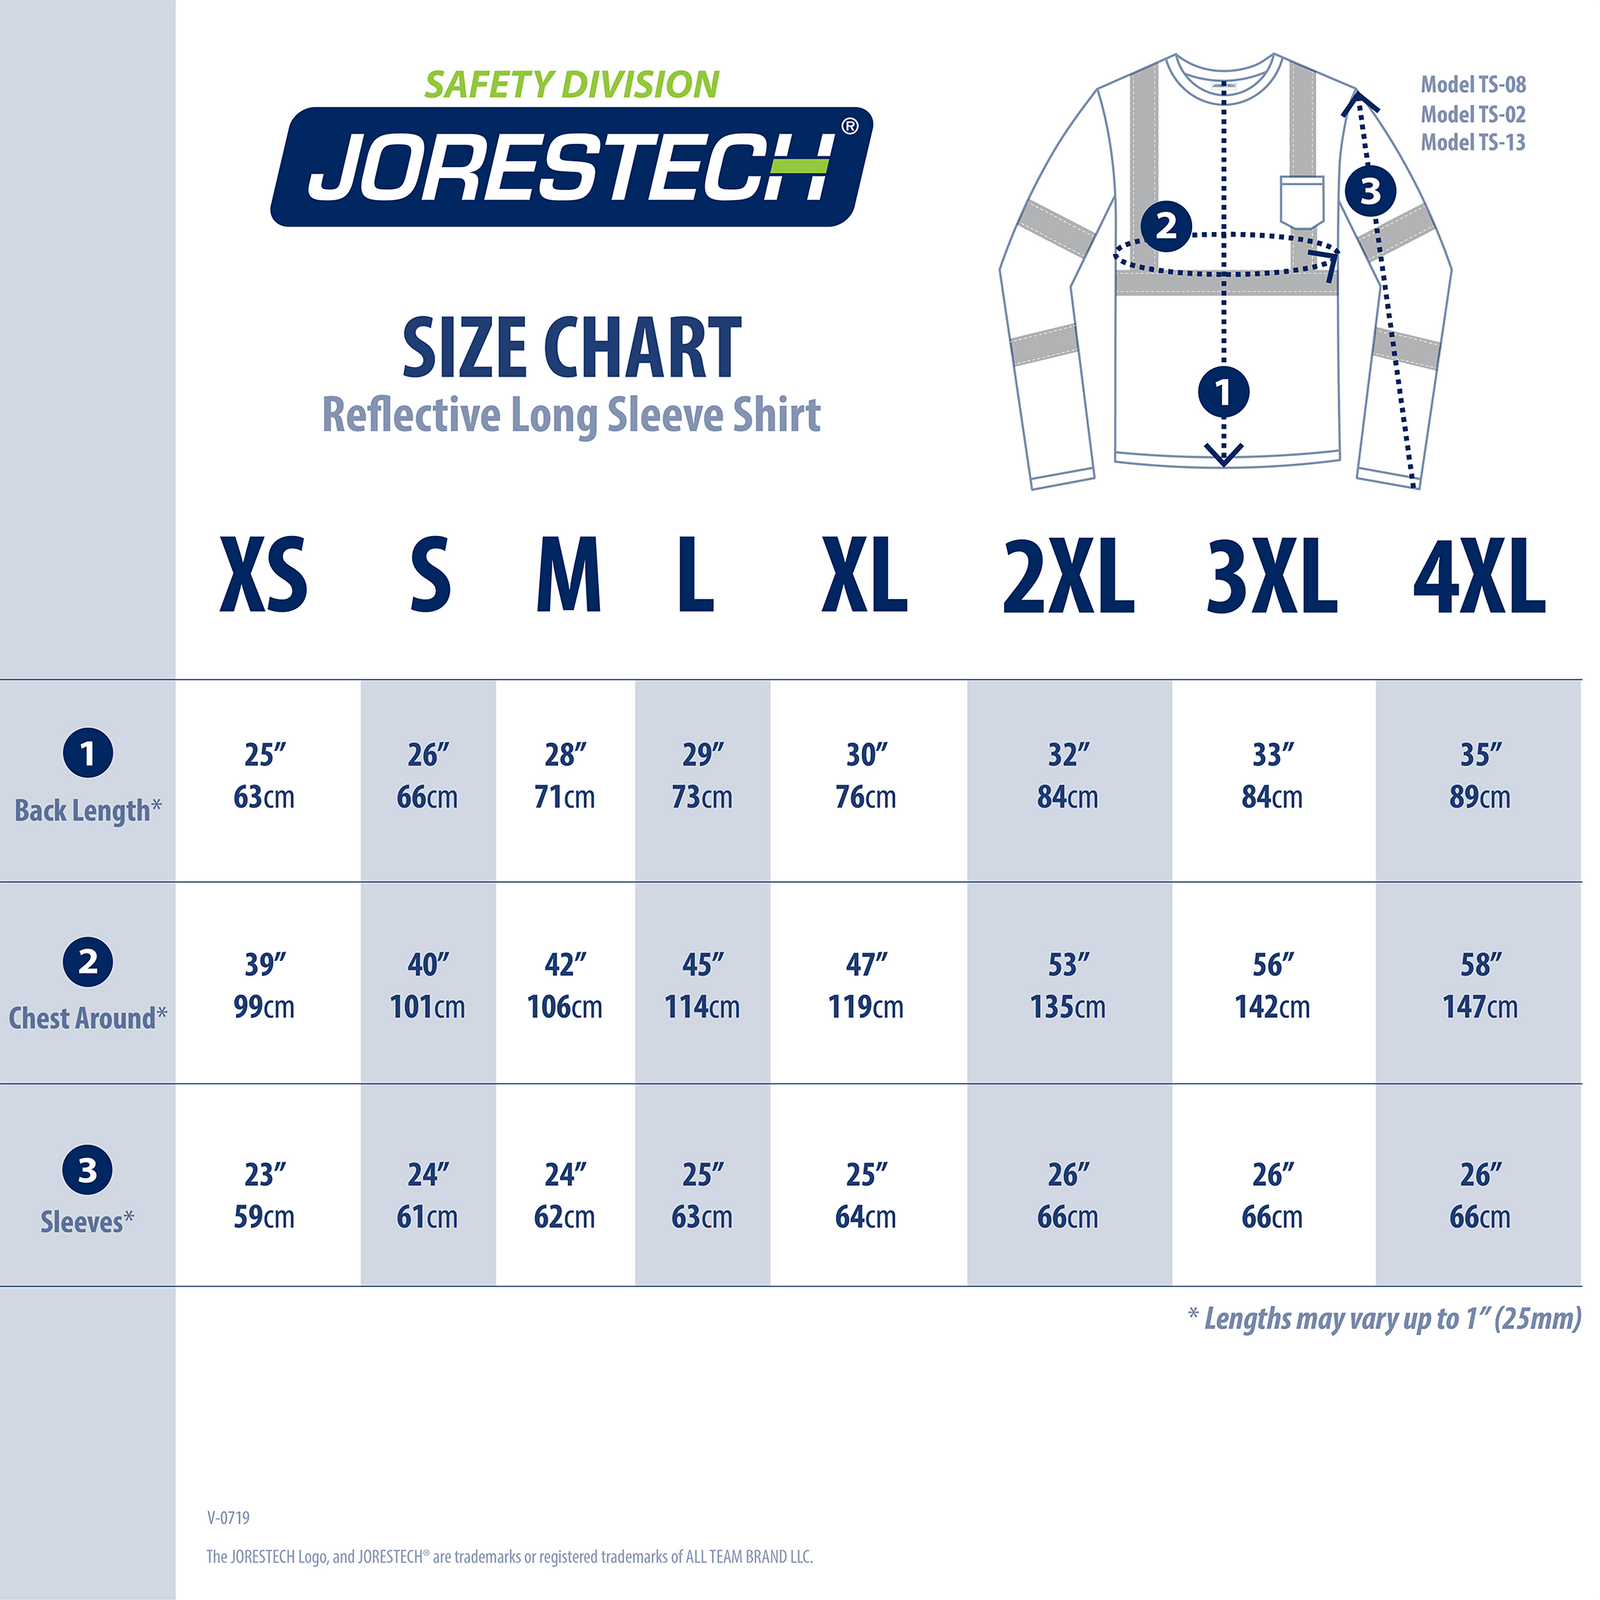 Size chart of the JORESTECH long sleeve safety shirt